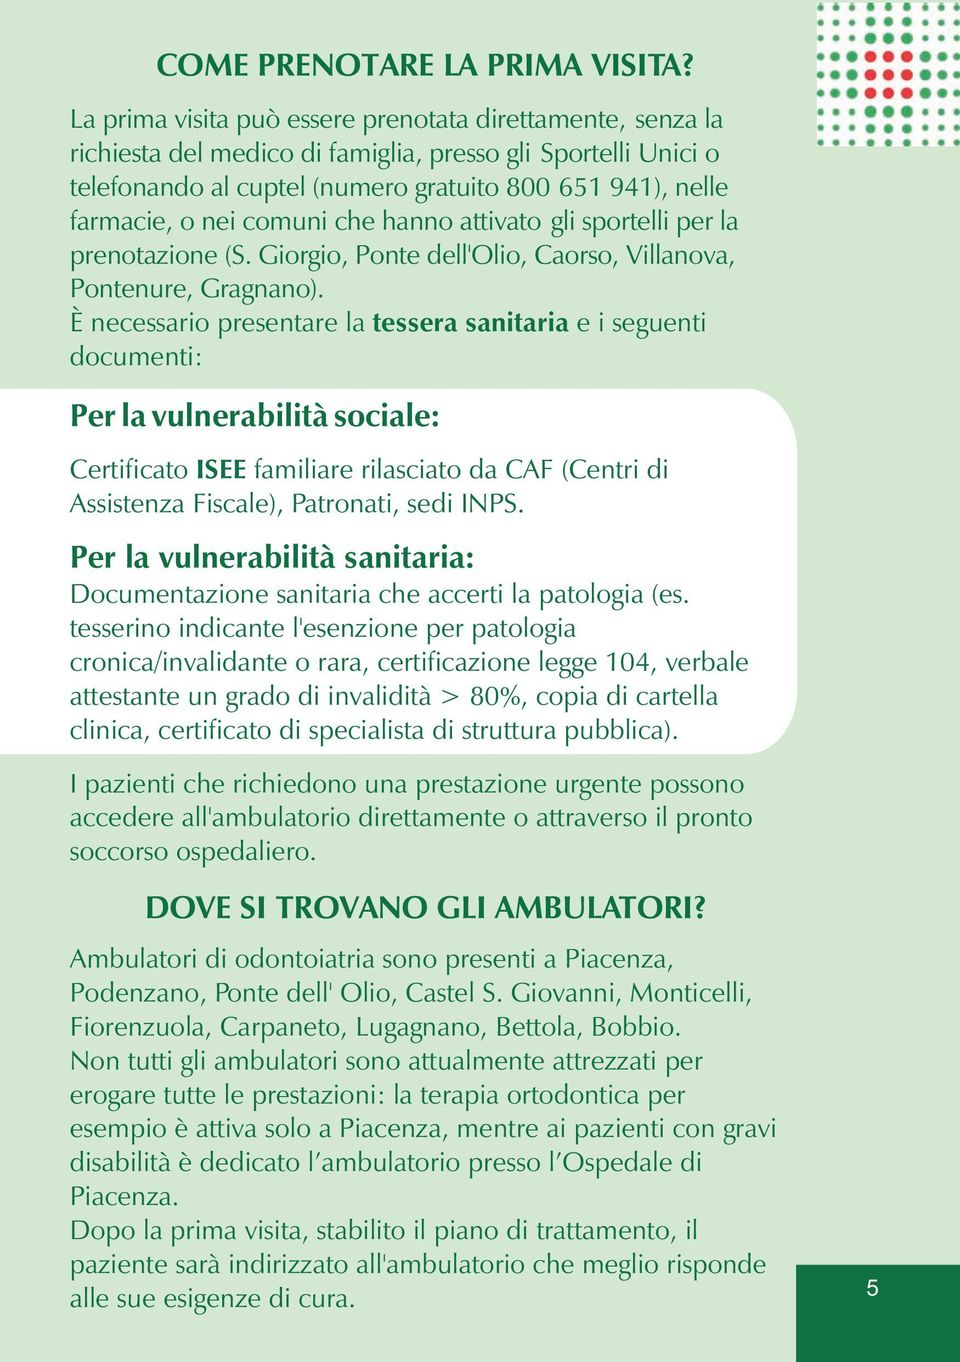 comuni che hanno attivato gli sportelli per la prenotazione (S. Giorgio, Ponte dell'olio, Caorso, Villanova, Pontenure, Gragnano).